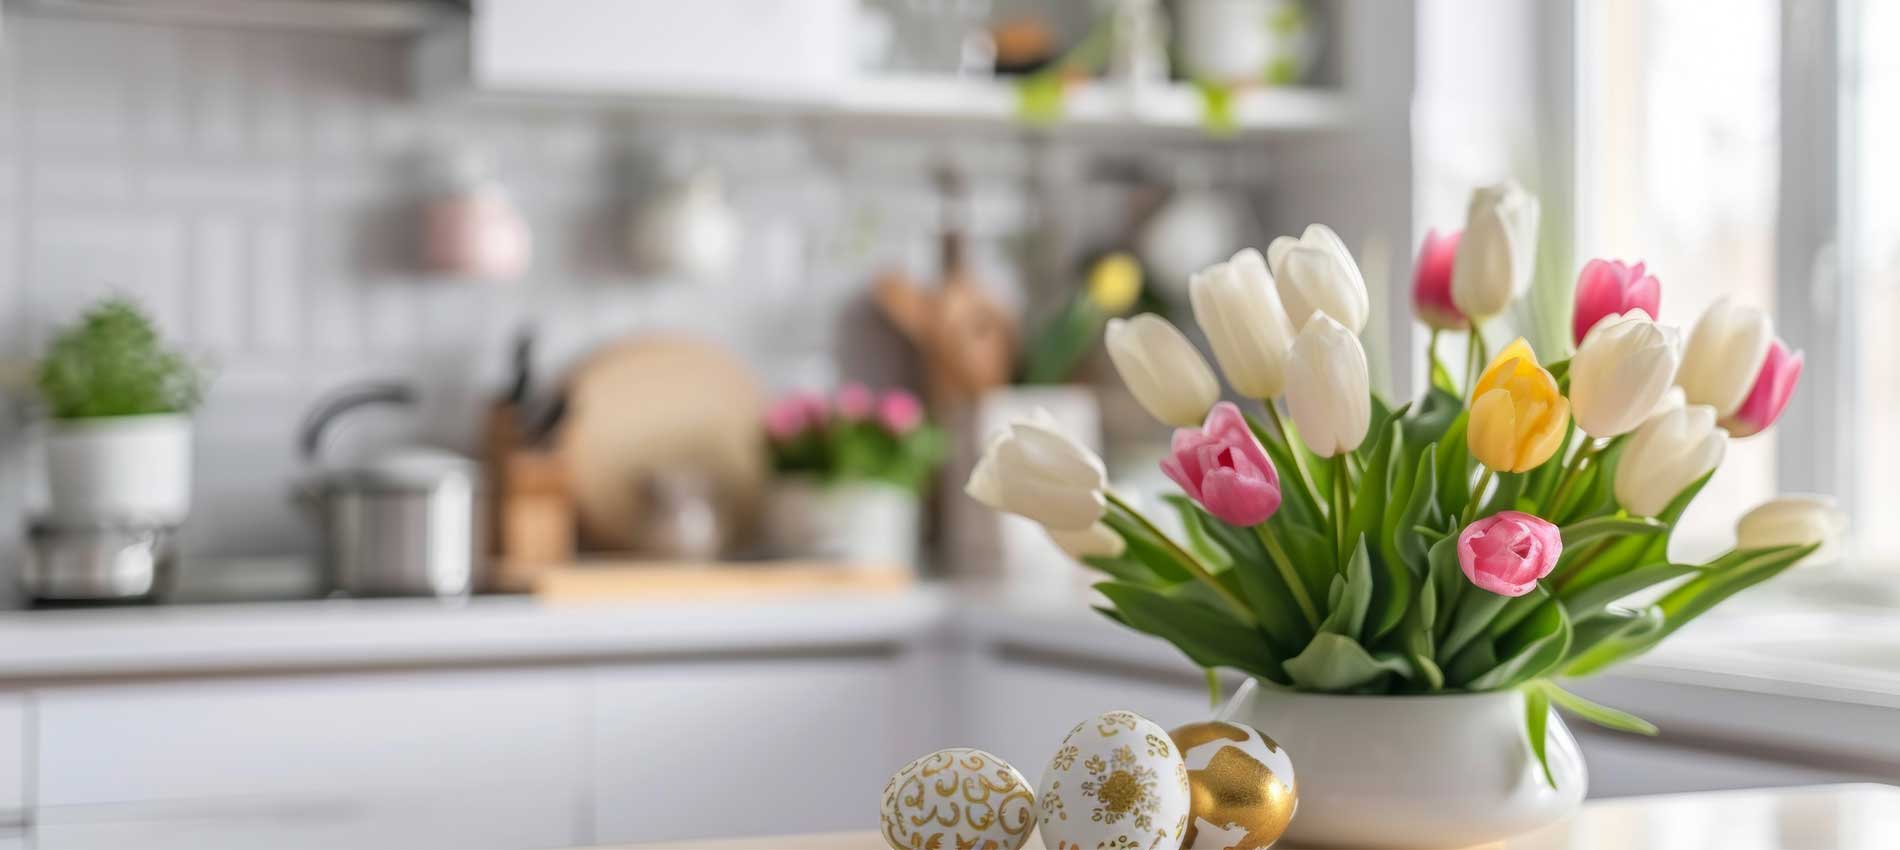 Spring florals in kitchen